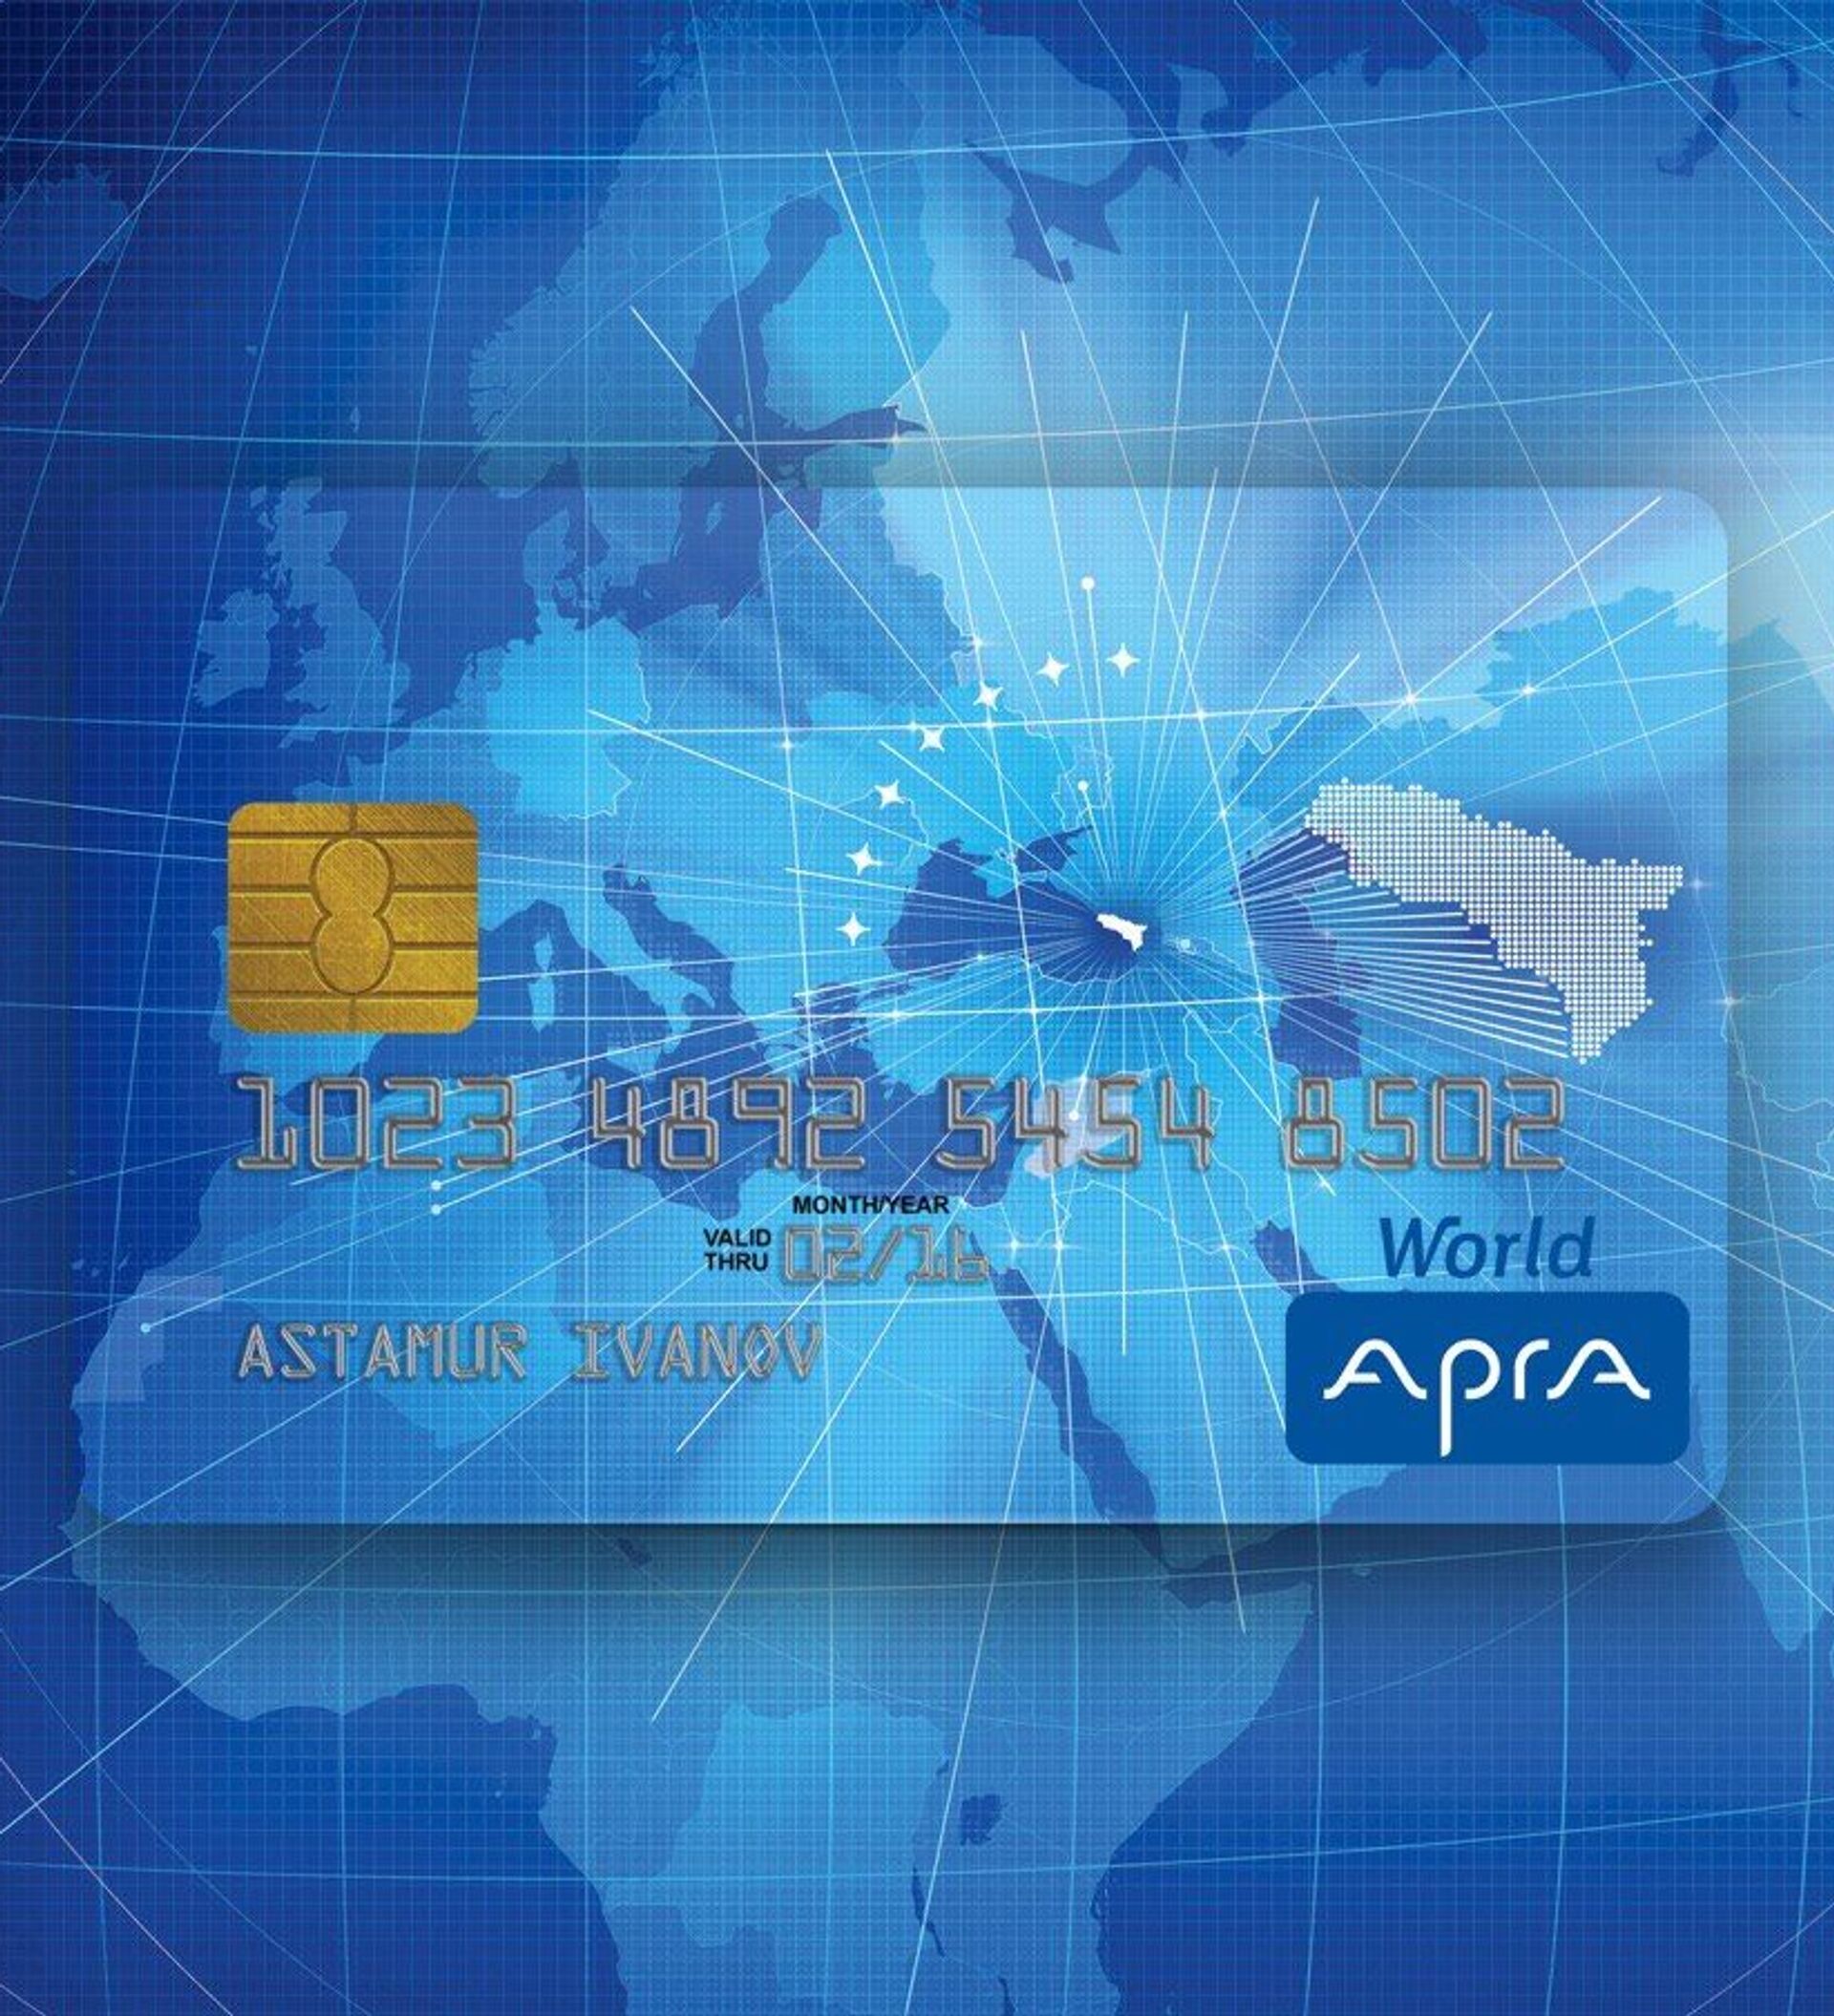 География обслуживания карт АПРА “World” увеличилась в 2020 году -14.12.2020, Sputnik Абхазия